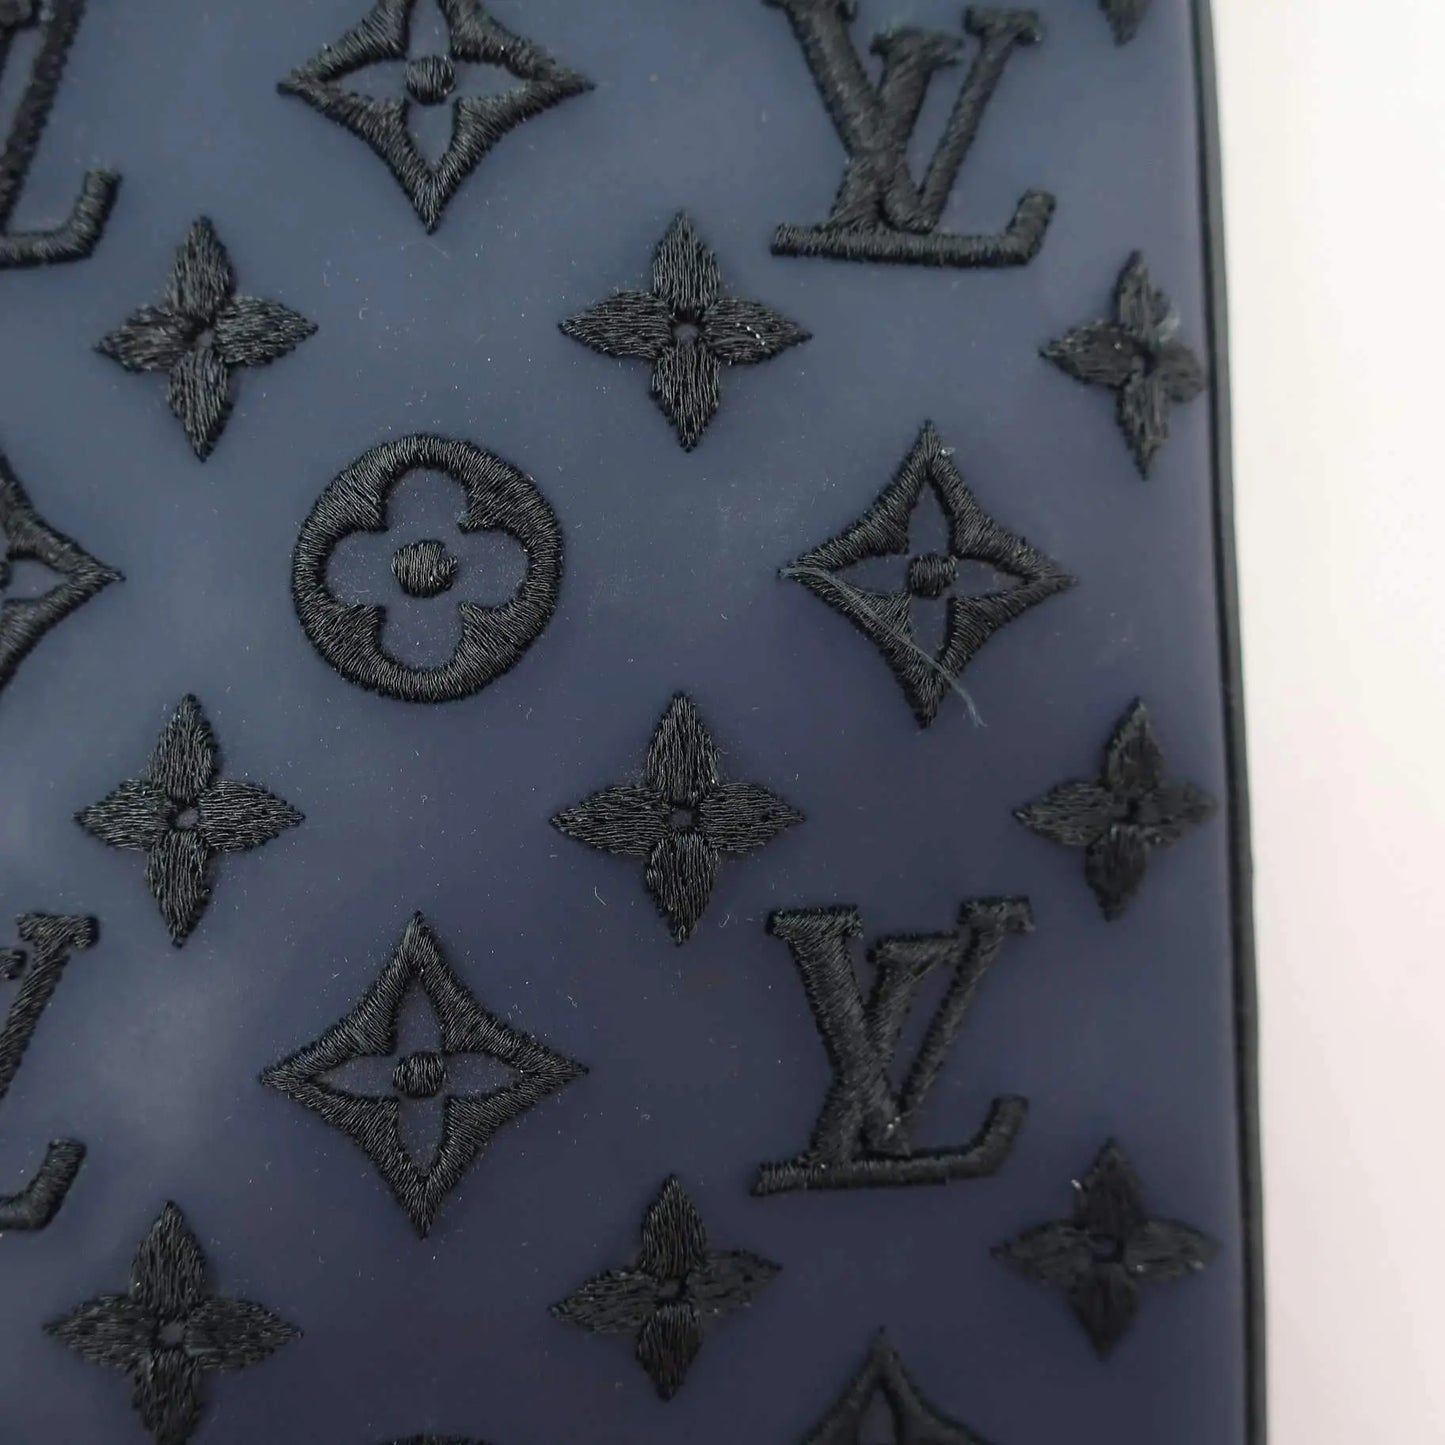 Louis Vuitton Louis Vuitton Limited Edition Blue Monogram Addiction Lockit Vertical MM Bag LVBagaholic